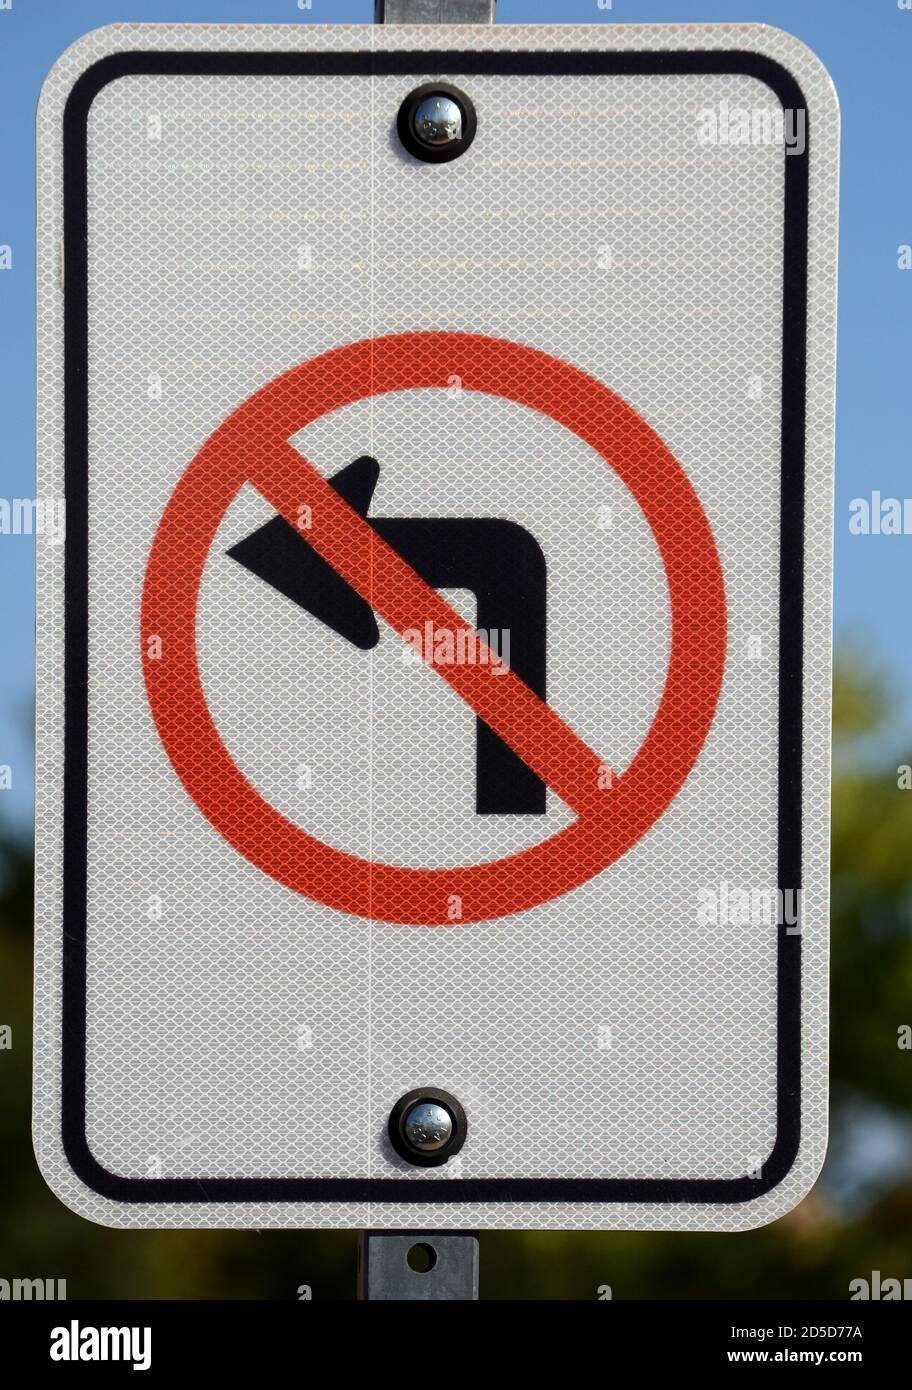 Un cartello stradale negli Stati Uniti informa gli automobilisti che non è consentito girare a sinistra in questo incrocio. Foto Stock